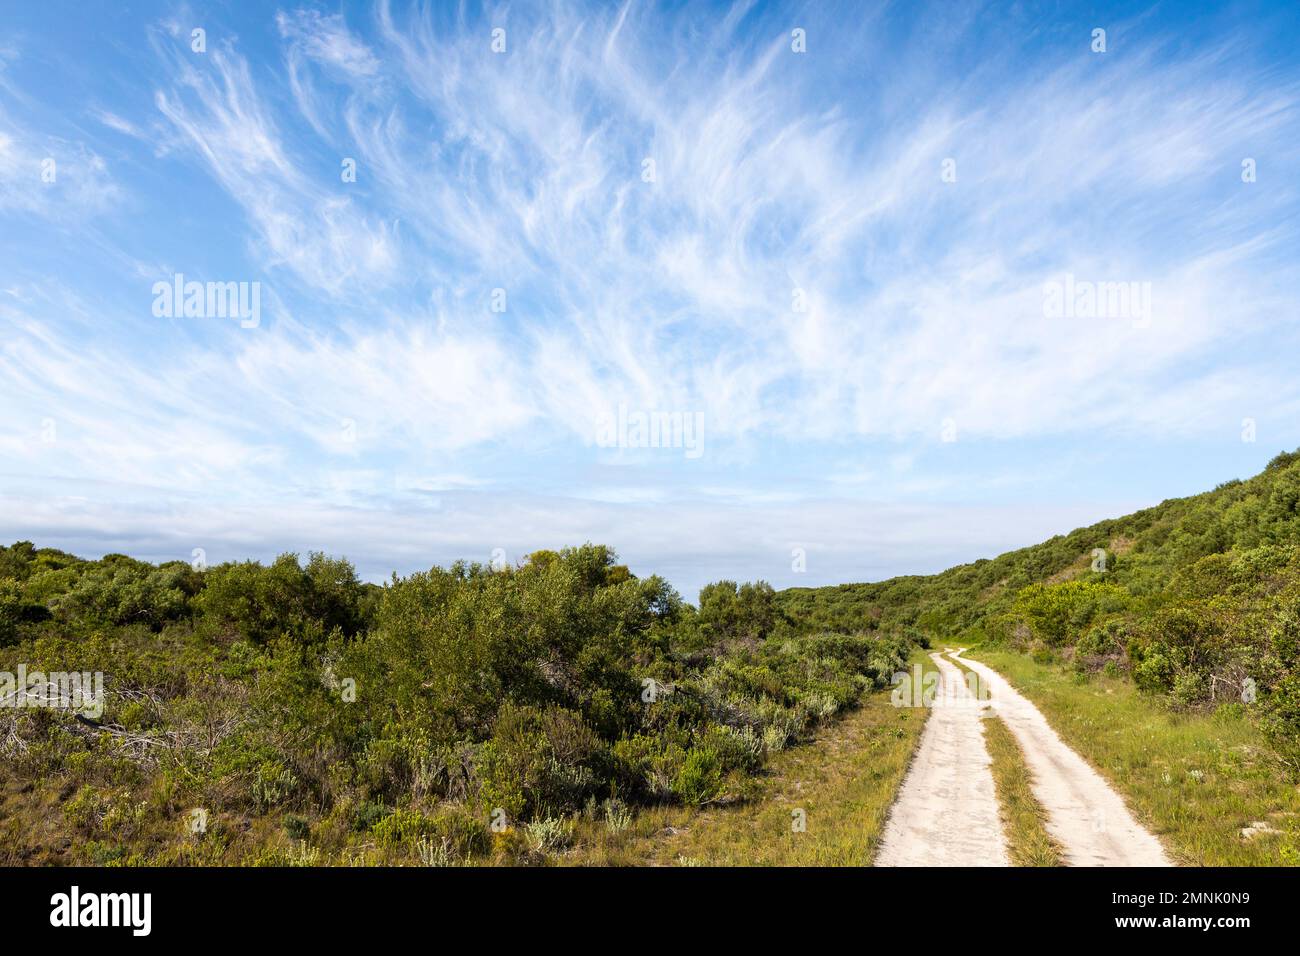 Afrique du Sud, Stanford, route de terre et feuillage vert sous ciel bleu Banque D'Images